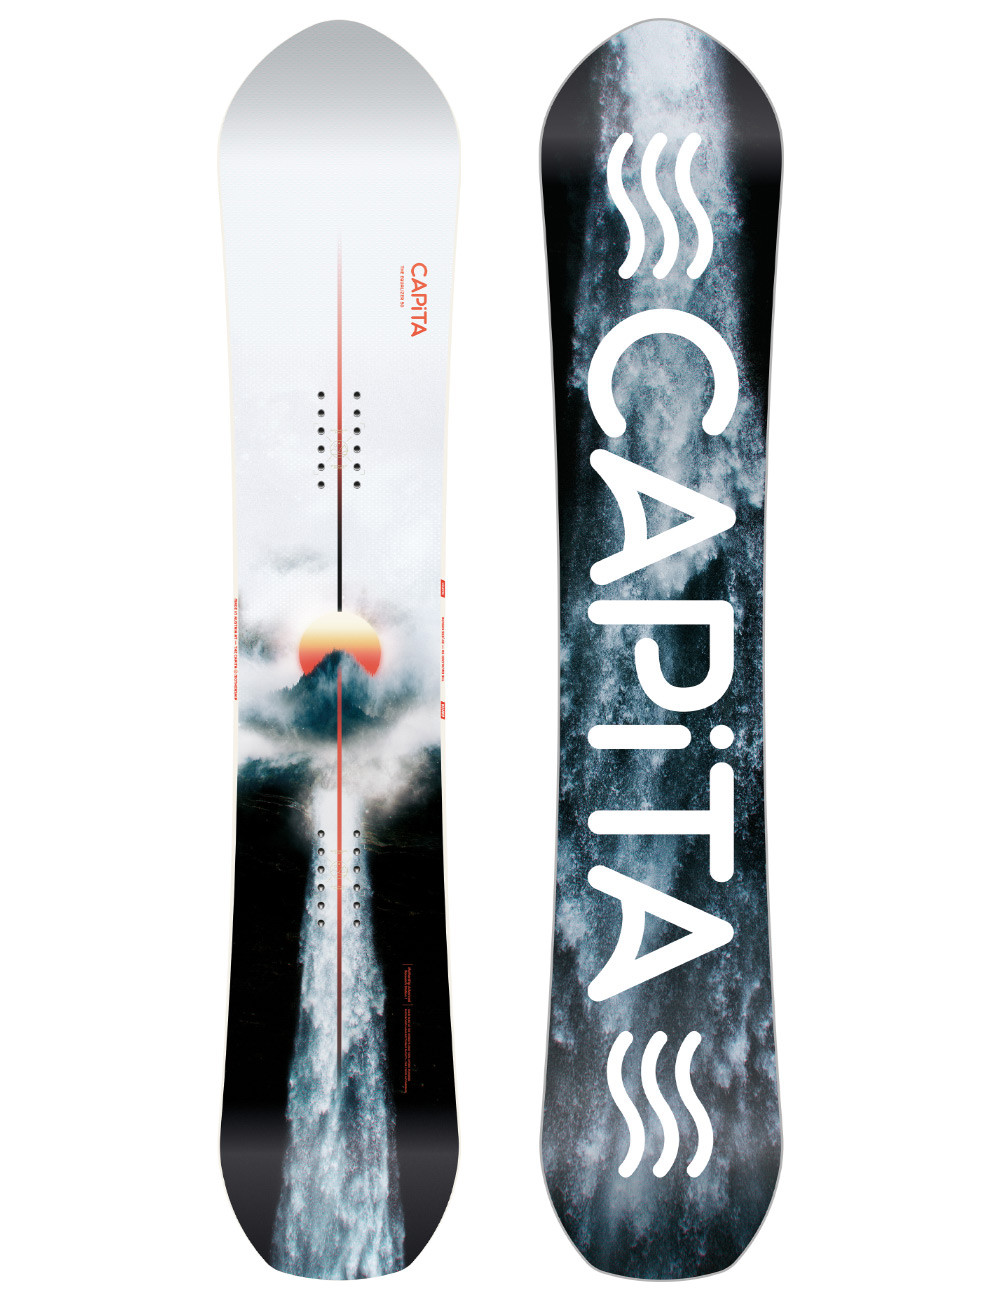 Deska snowboardowa Capita Equalizer by Jess Kimura